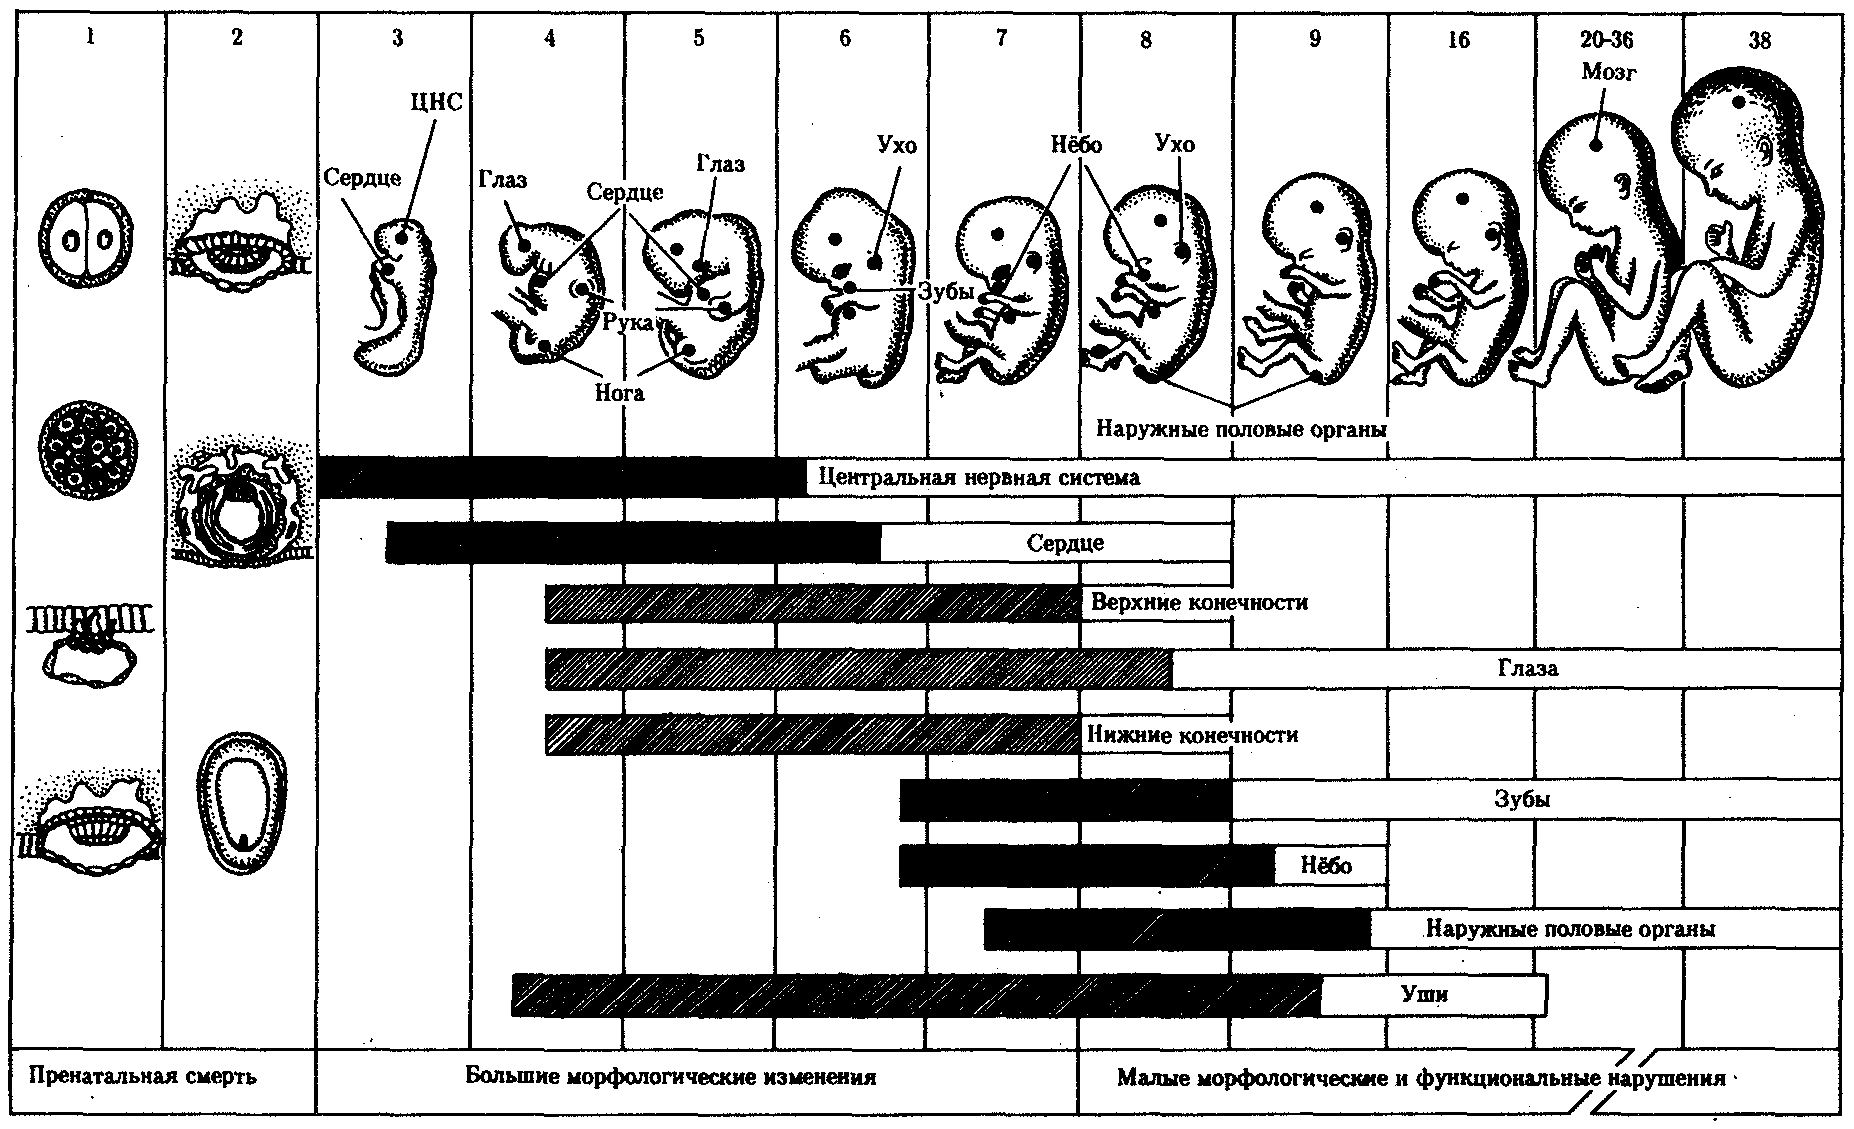 Особенности внутриутробного развития человека. Схема периодов внутриутробного развития плода. Критические периоды эмбриогенеза таблица. Критические периоды развития зародыша и плода человека.. Критические периоды развития плода таблица.